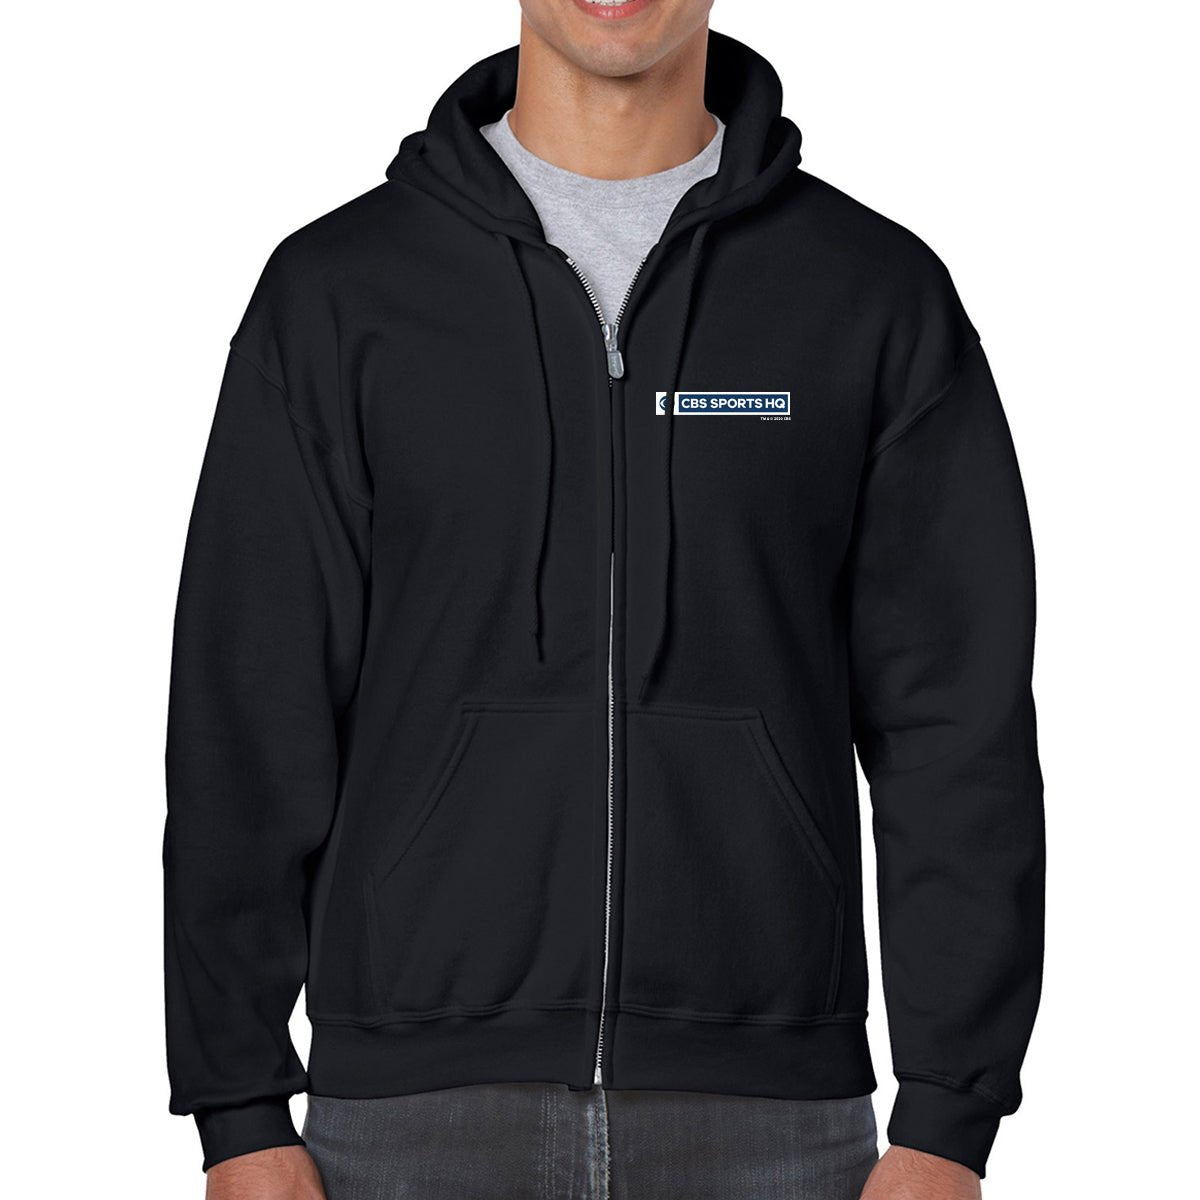 CBS Sports HQ Fleece Zip - Up Hooded Sweatshirt - Paramount Shop